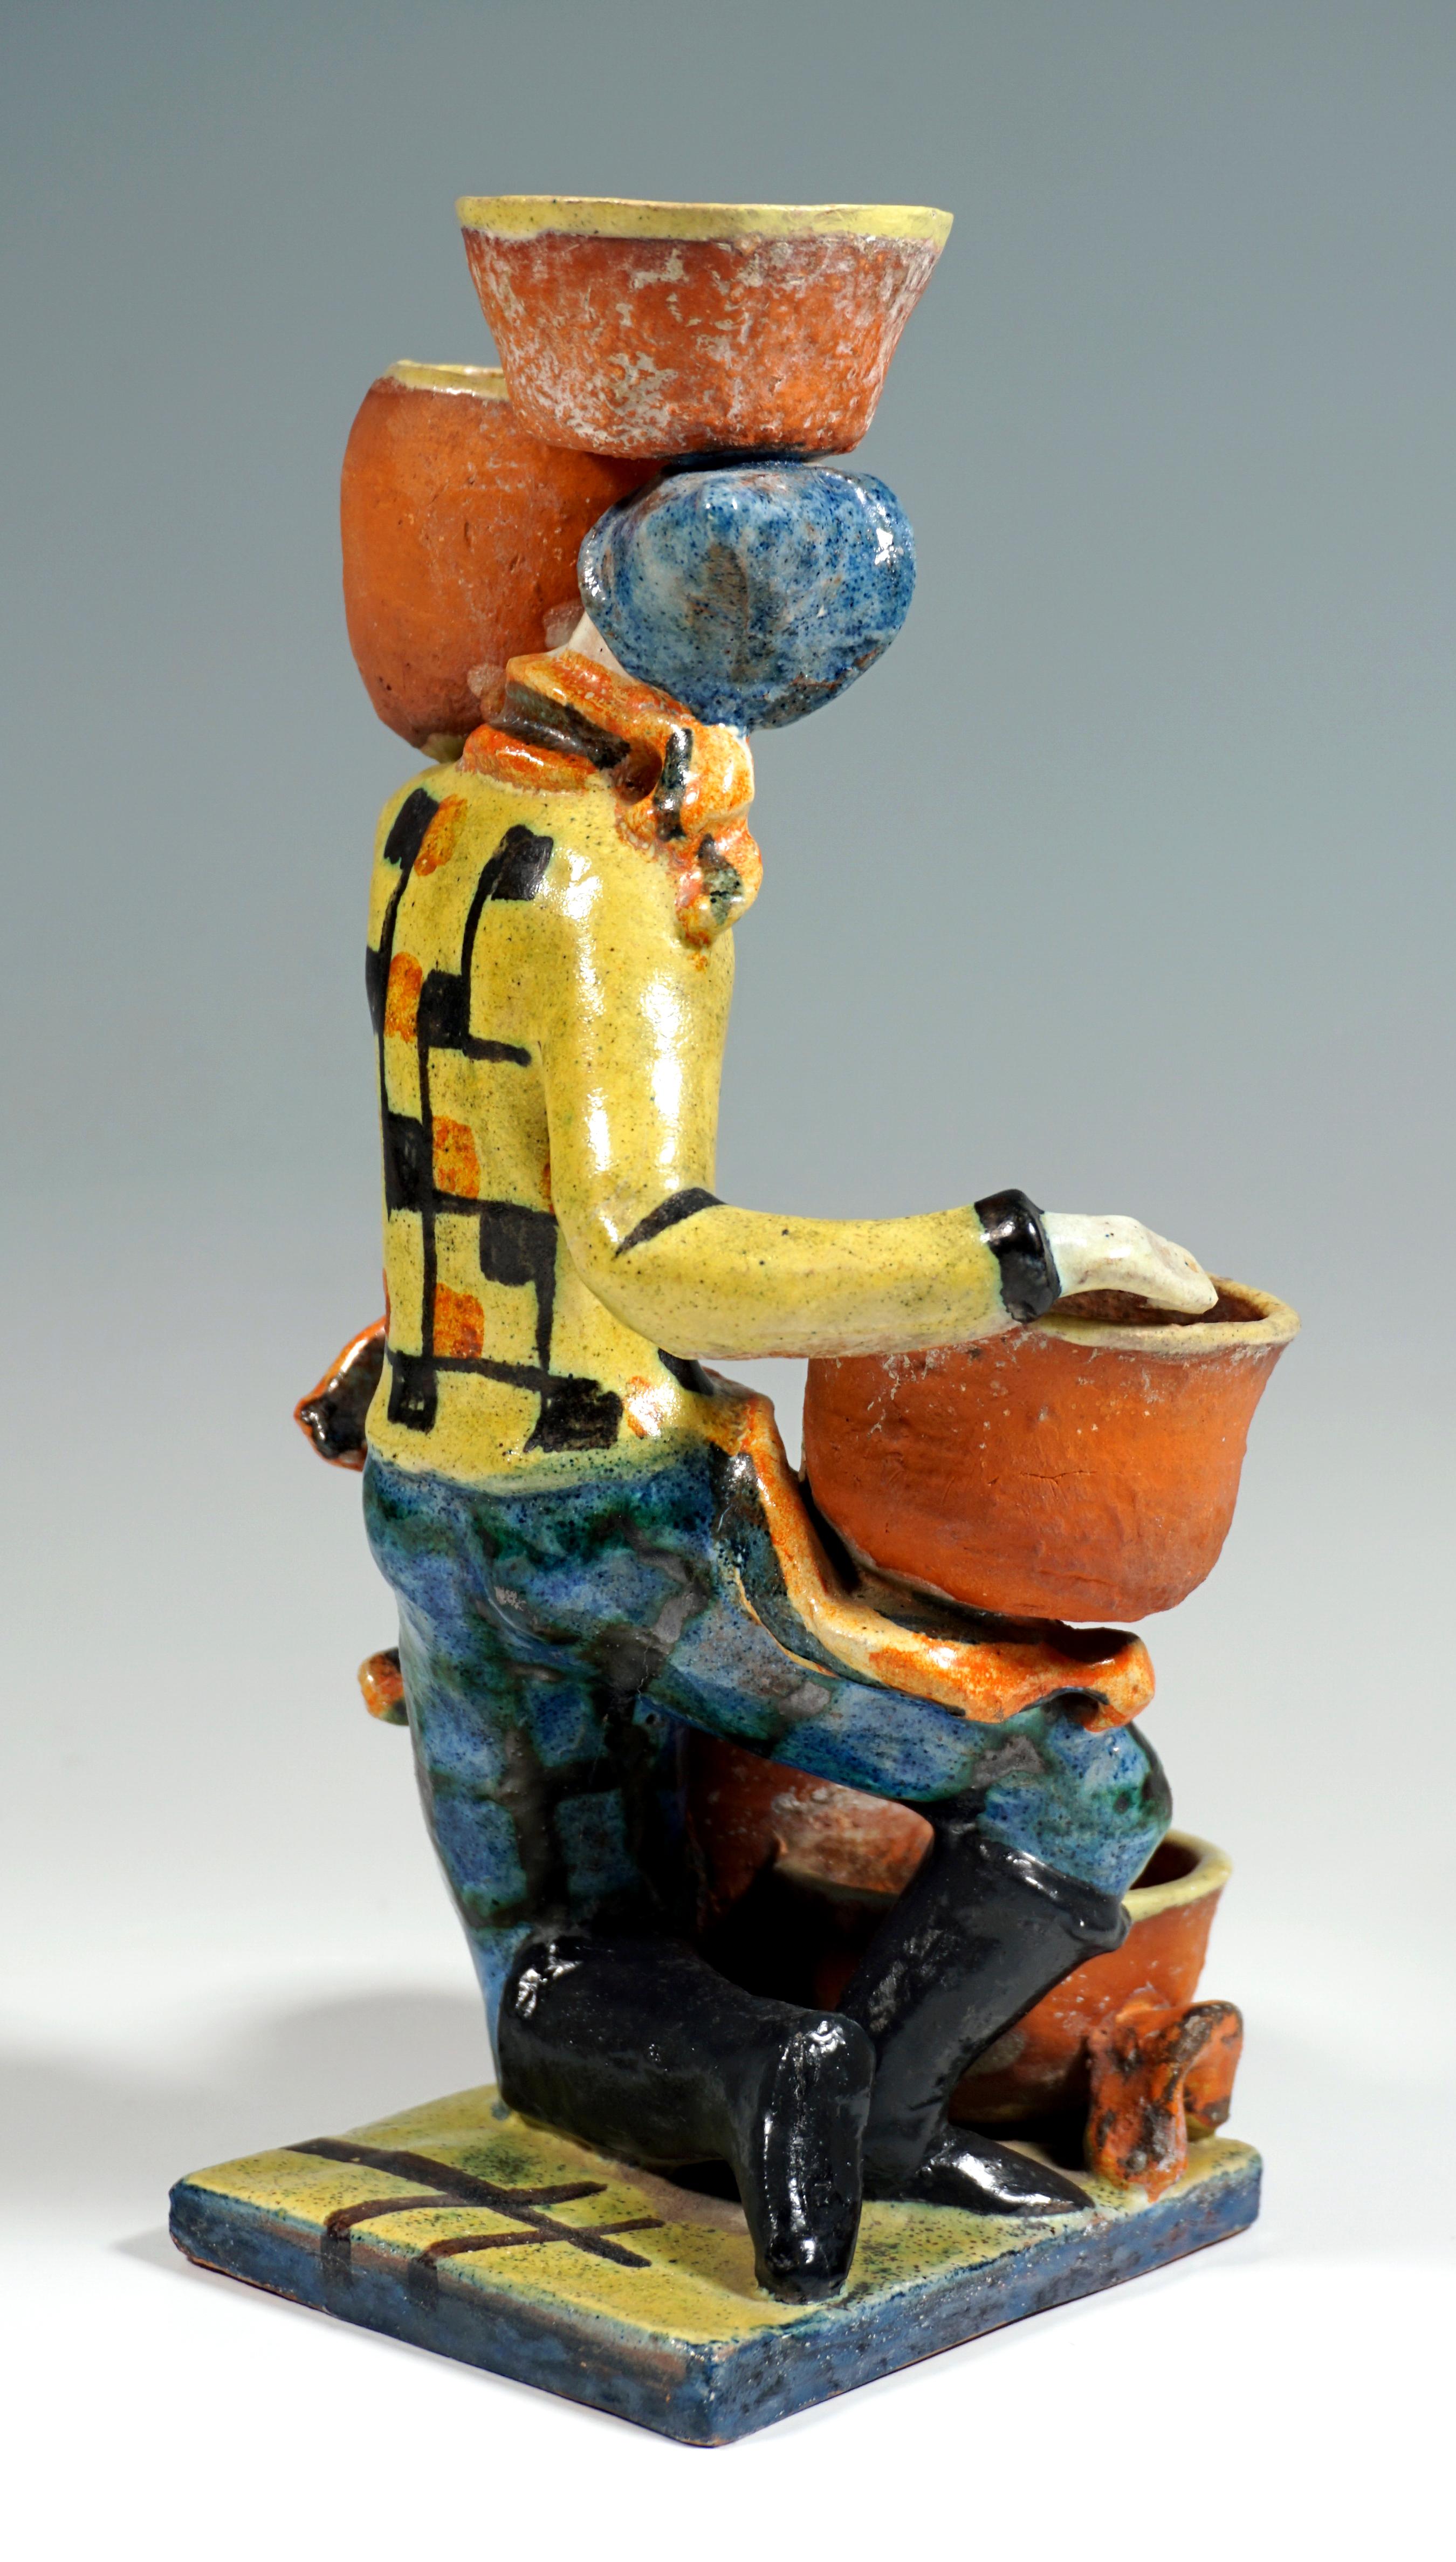 Austrian Wiener Werkstaette Expressive Art Ceramics 'Cactus Carrier', by G. Baudisch 1927